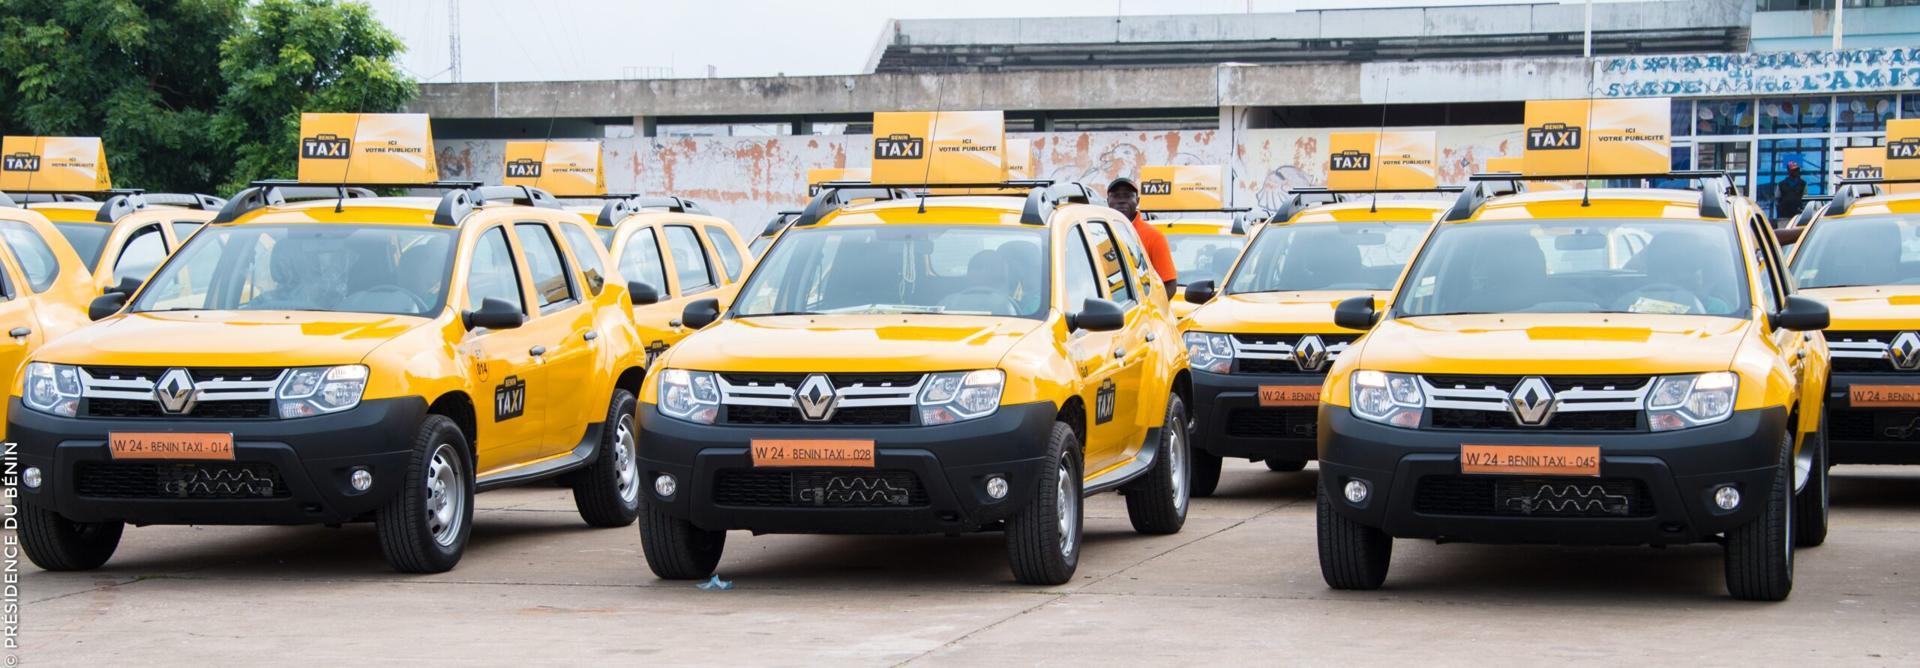 Transport: la gestion du projet Bénin-Taxi préoccupe l’opposition parlementaire